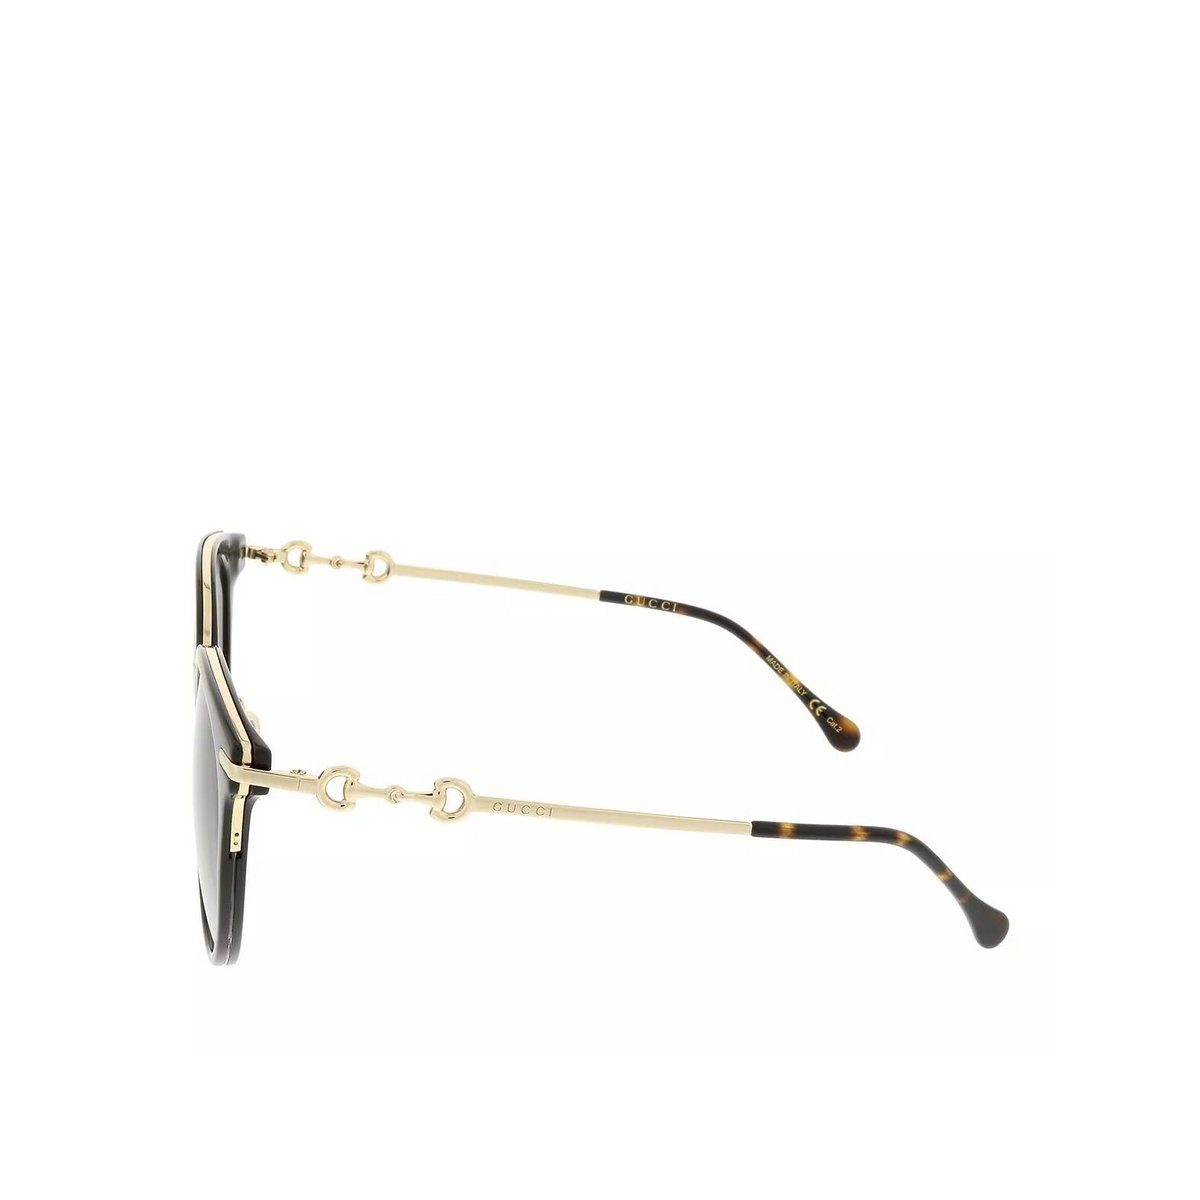 GUCCI Sonnenbrille (1-St) schwarz